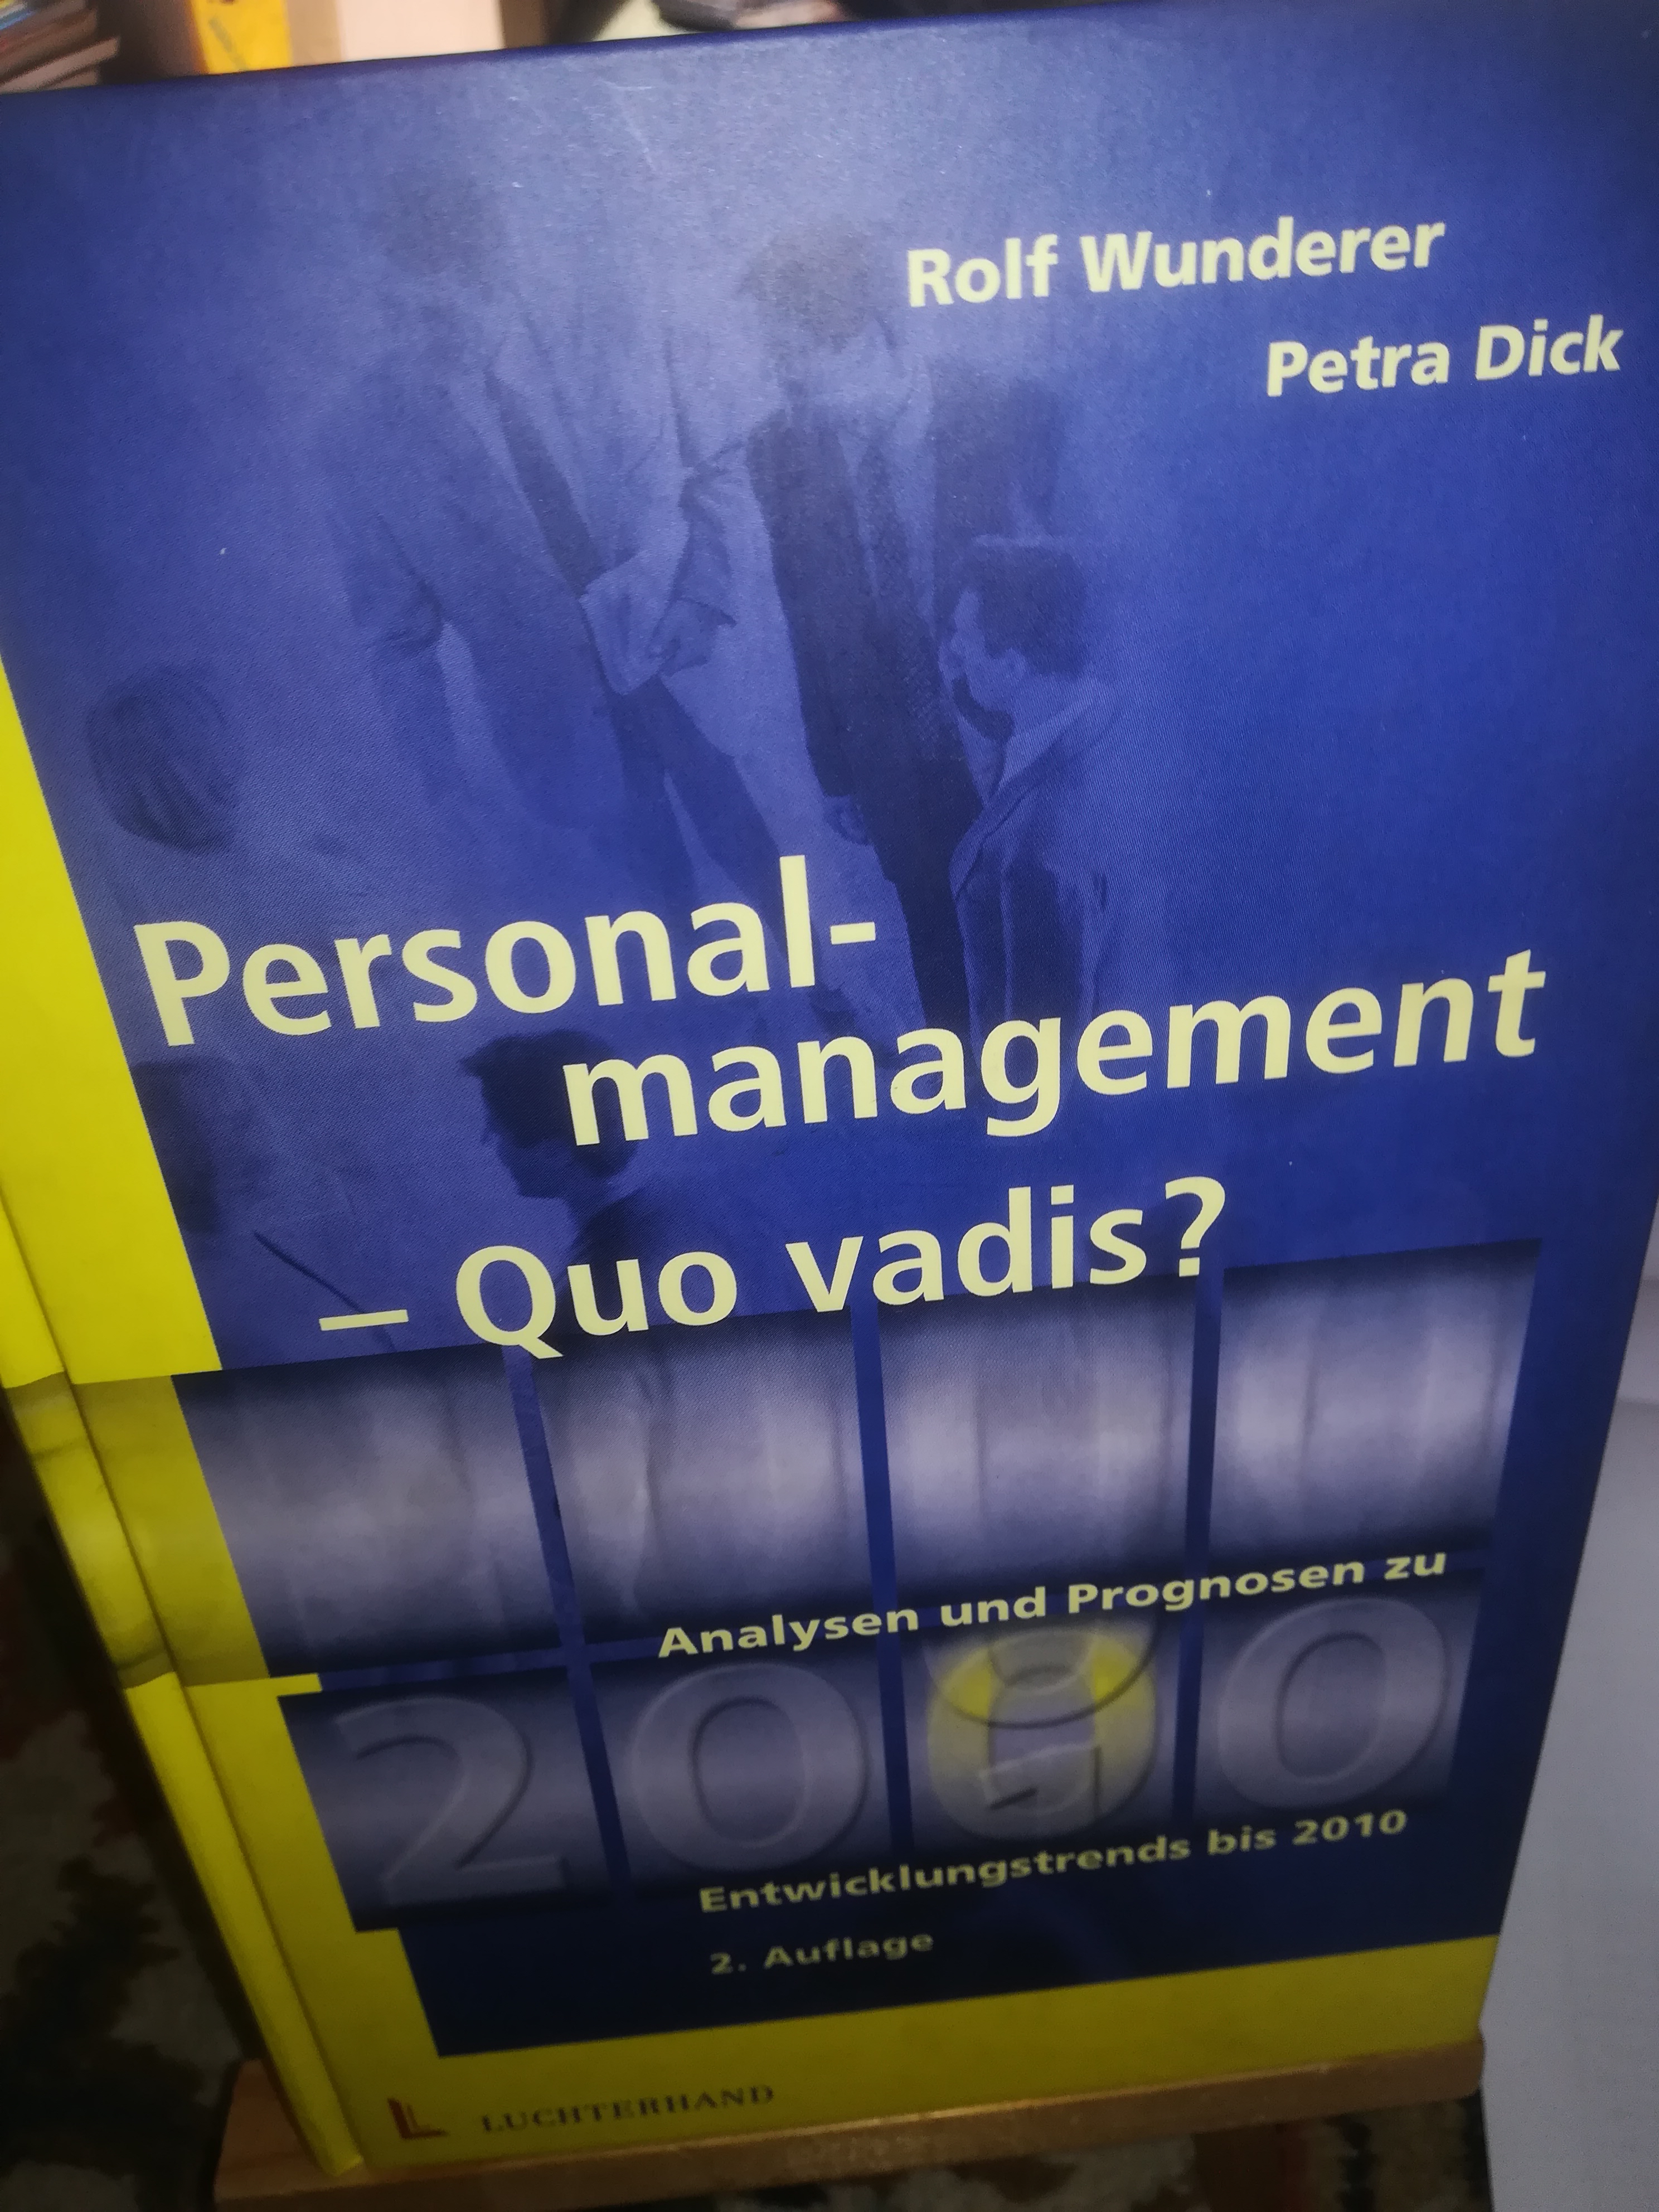 Personalmanagement Quo Vadis? Analysen und Prognosen zu Entwicklungstrends bis 2010, 2. Auflage - Wunderer Rolf, Dick Petra